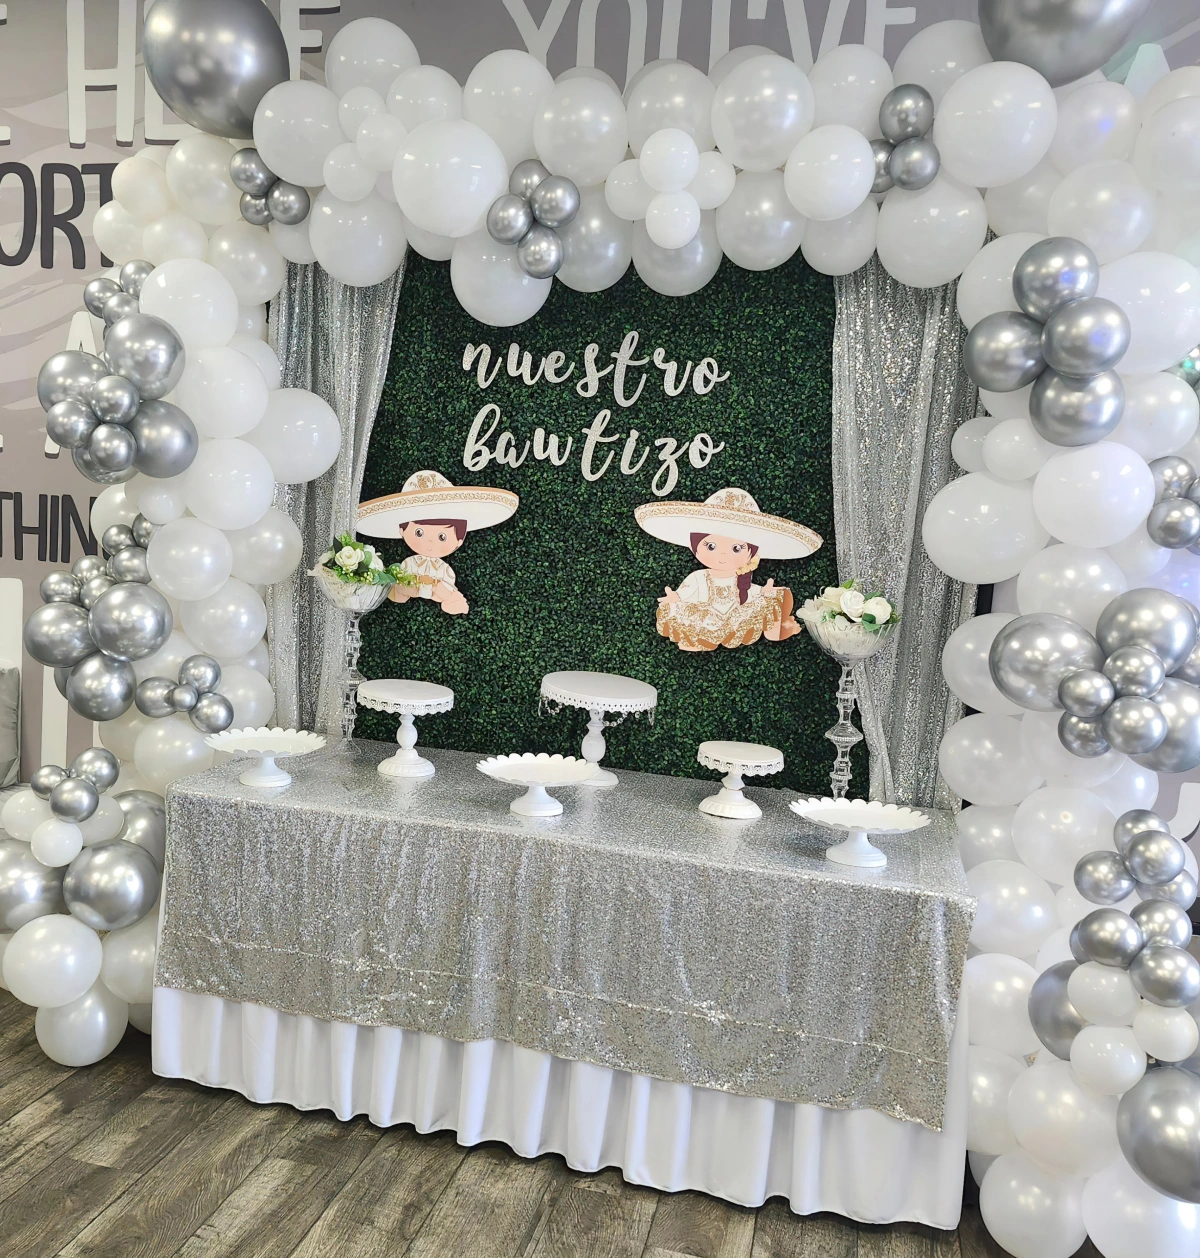 ballons blanc et gris arc decoratif table gateaux dessert nappe glitter